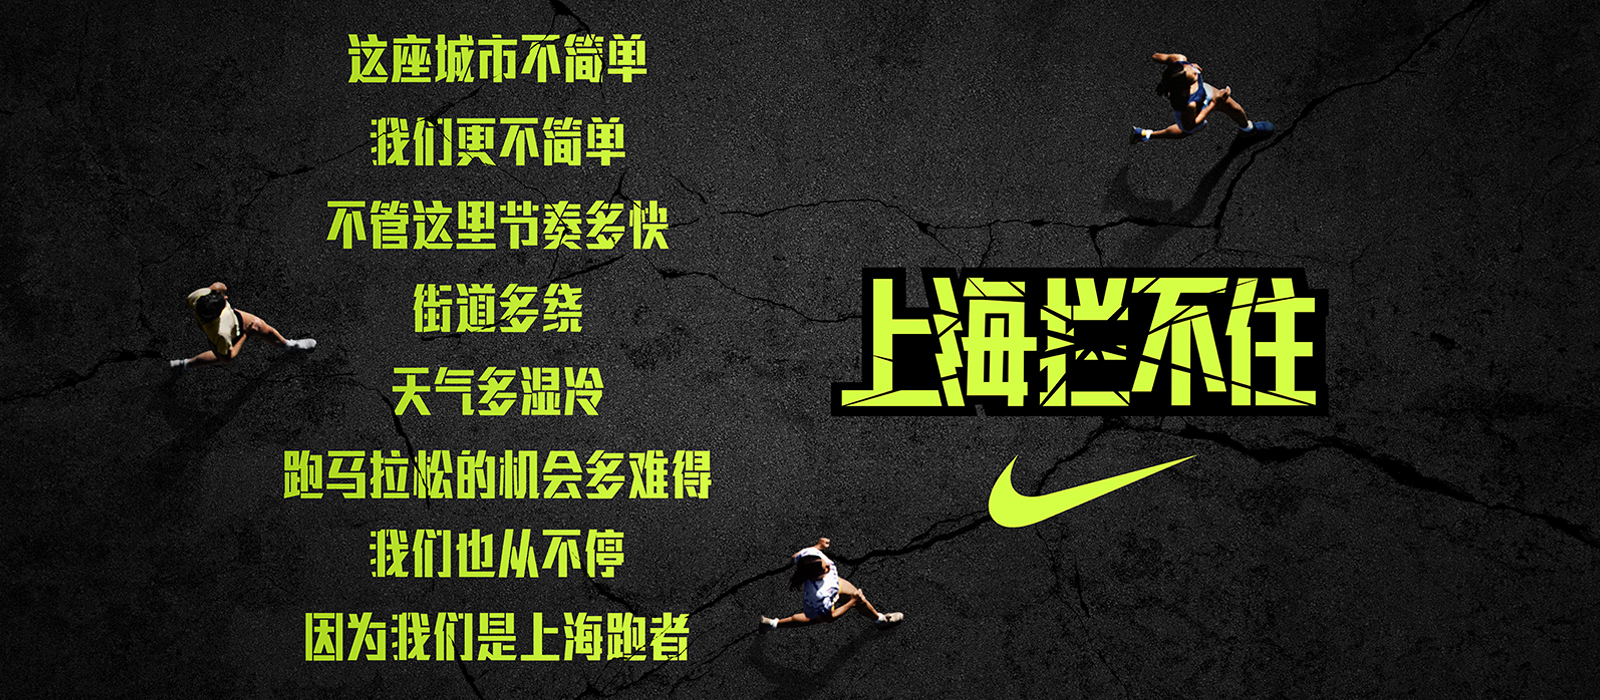 耐克全力推动跑步文化在中国生根发芽